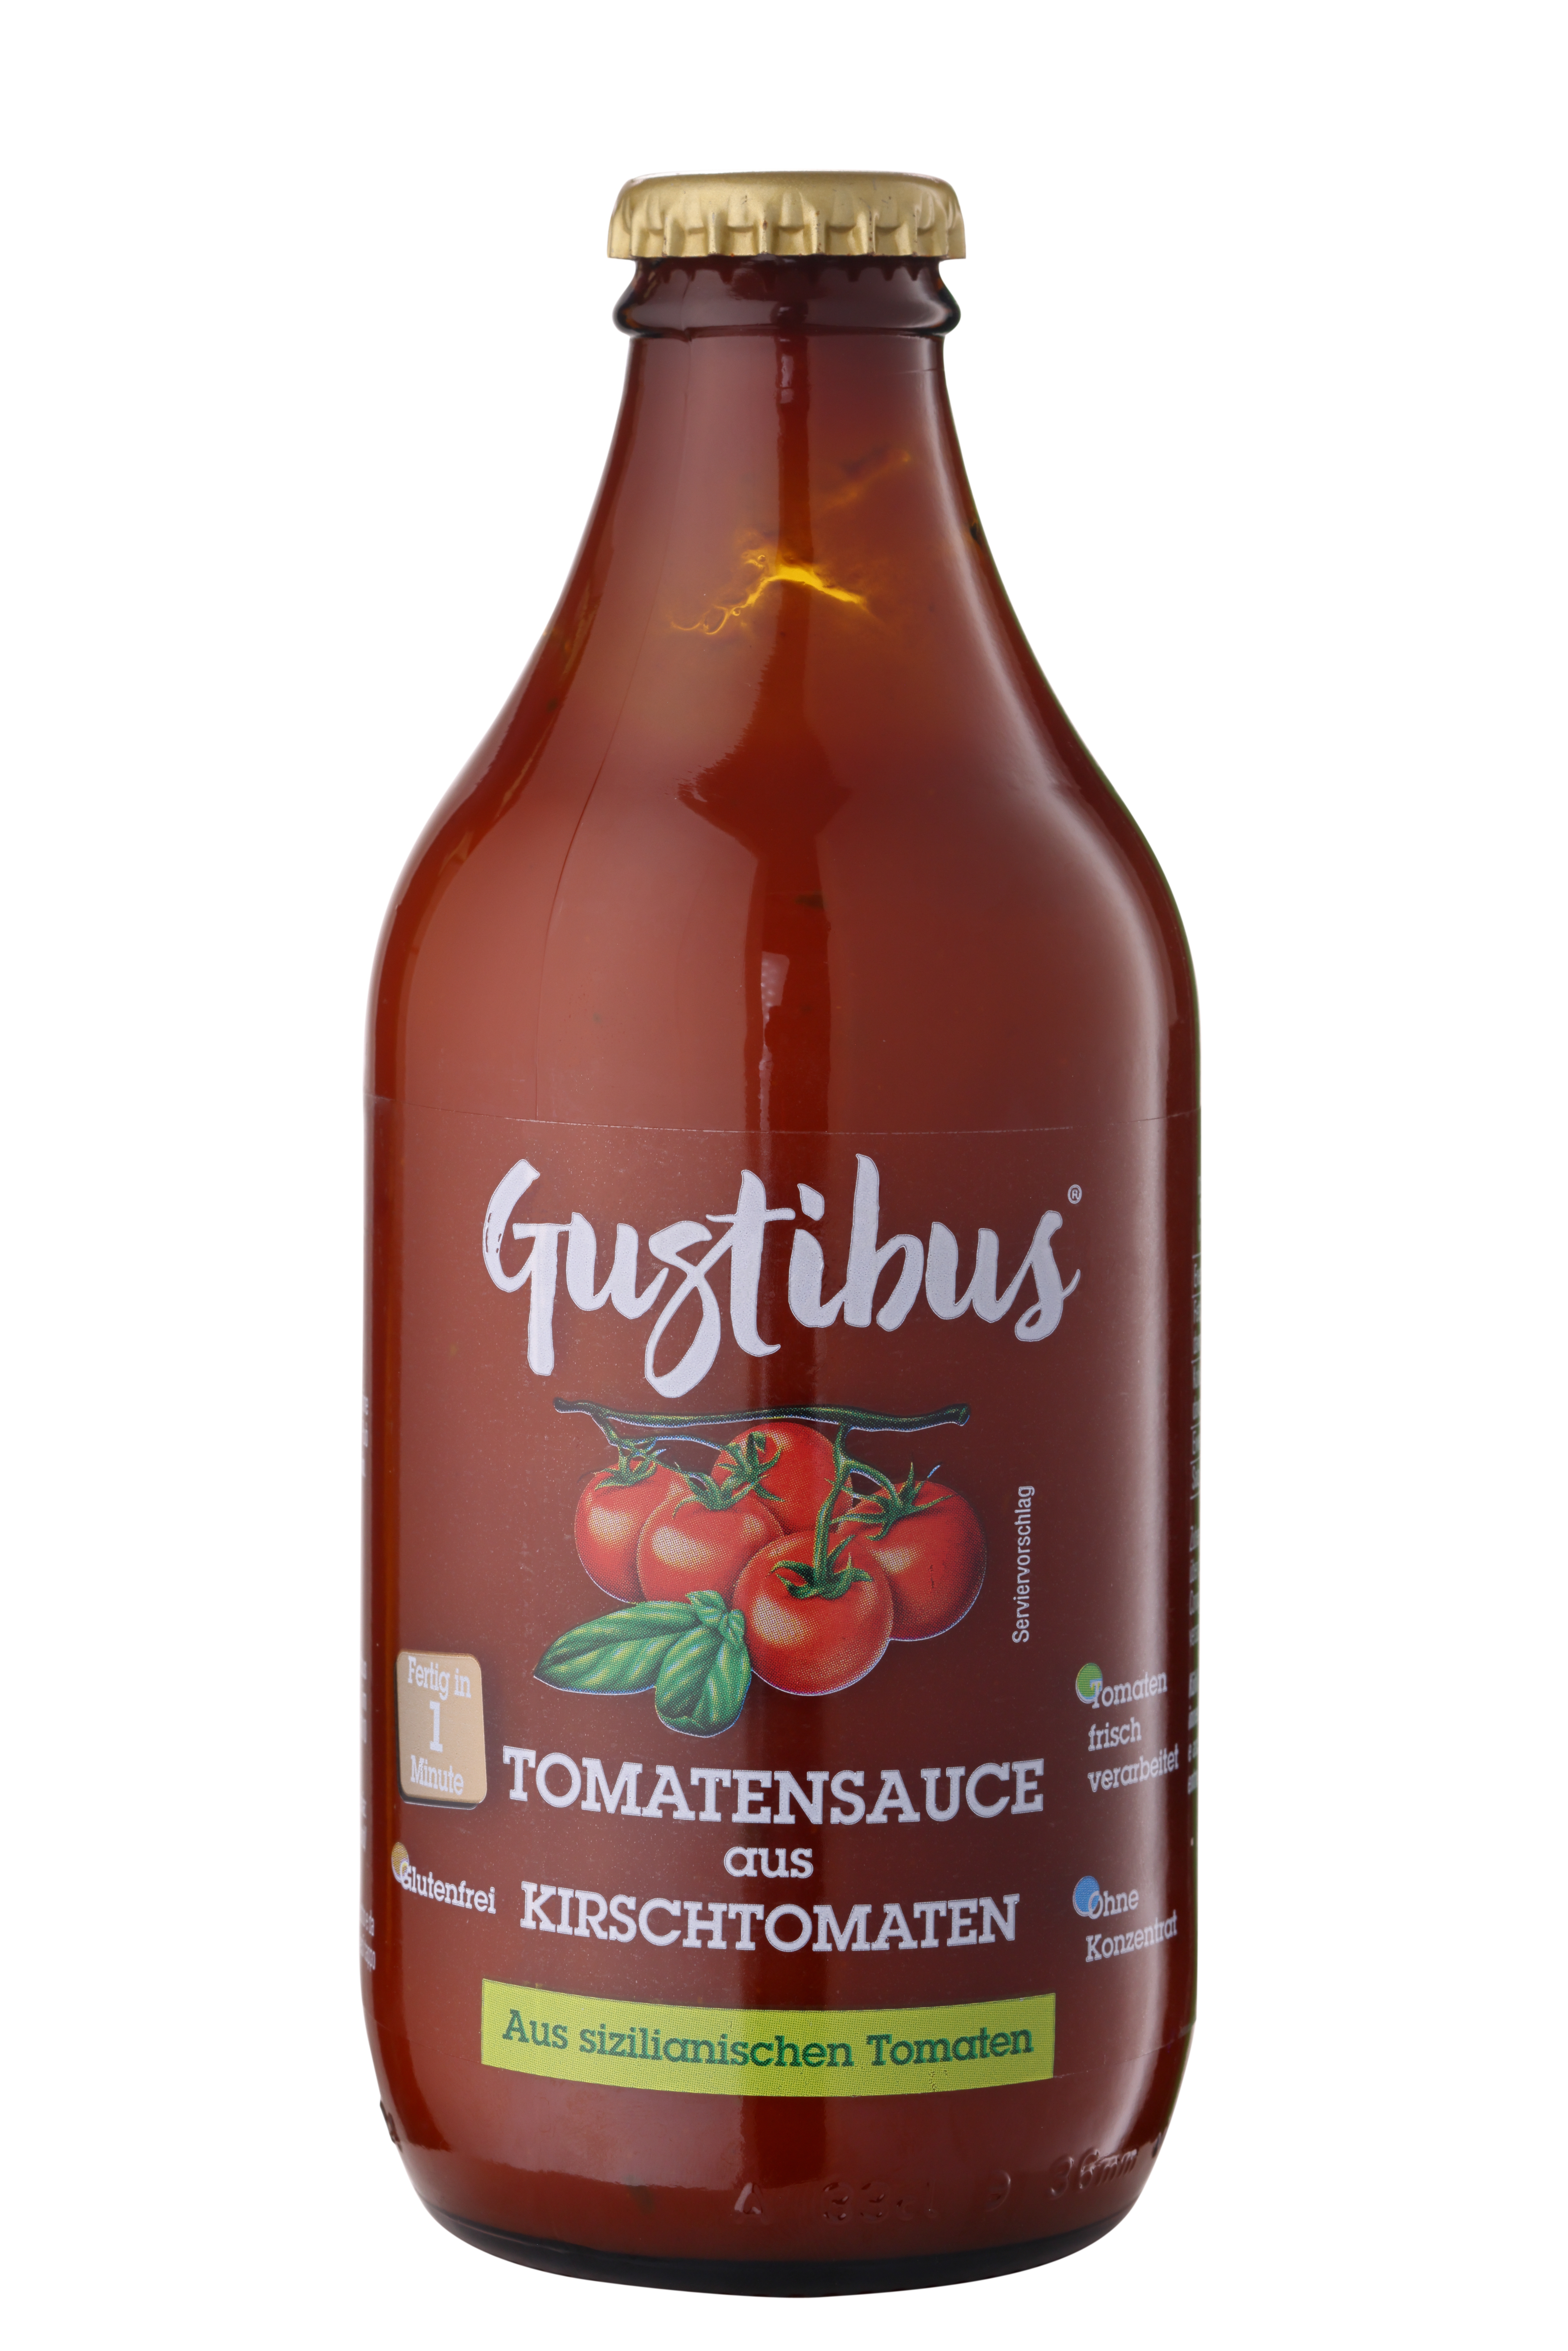 Gustibus, Tomatensauce aus sizilianischen Kirschtomaten, 330 g